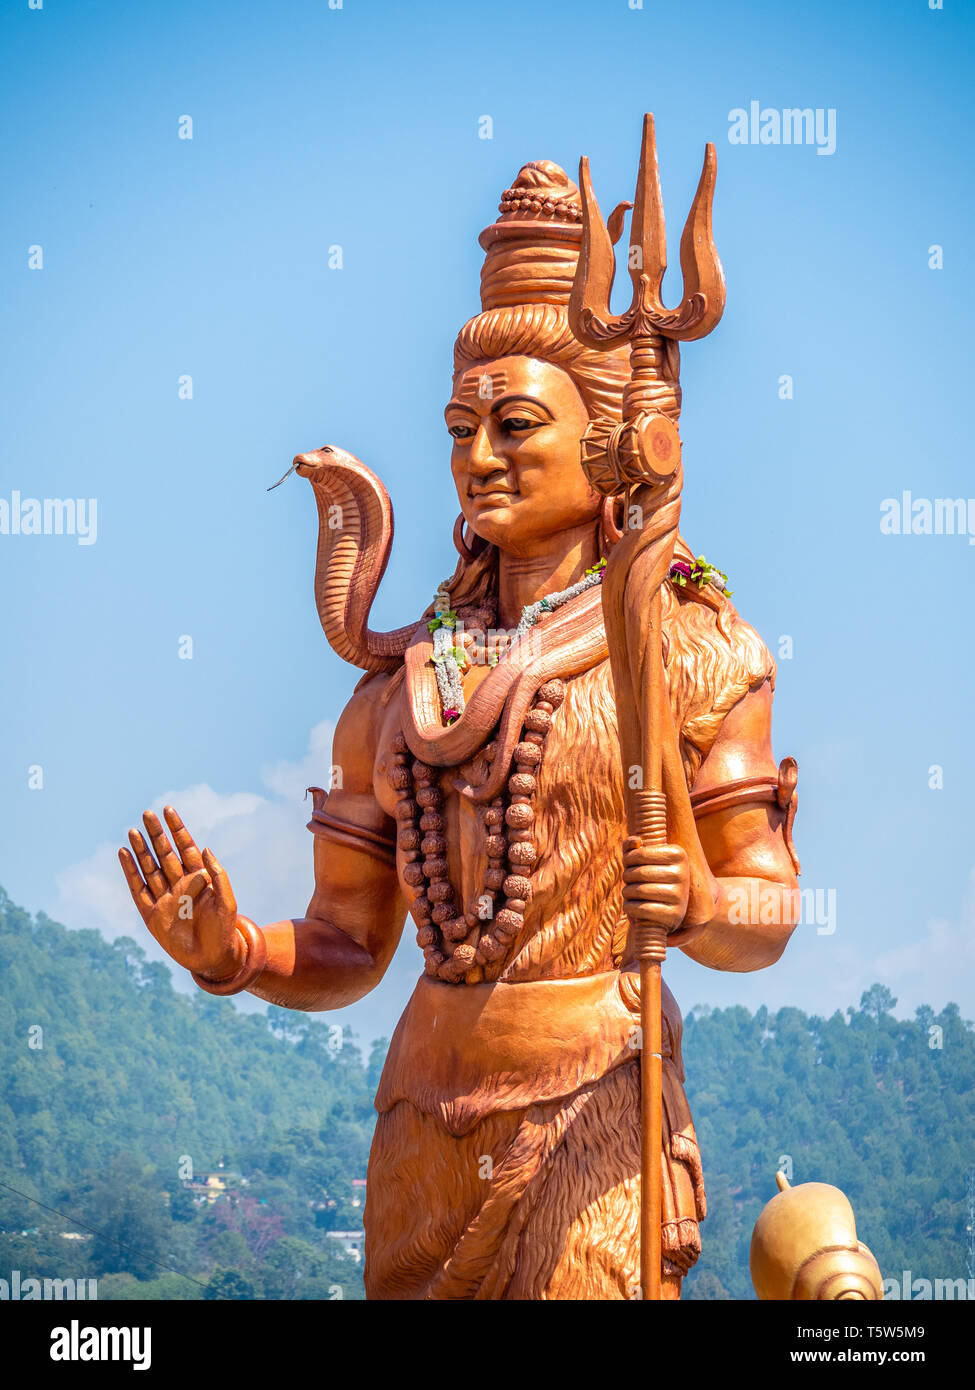 Riesige Statue von Lord Shiva oder Mahadeva die Große hinduistische Gott im Tempel Bagnath Bageshwar am Zusammenfluss von Saryu und Gomati Flüsse im nördlichen Indien Stockfoto